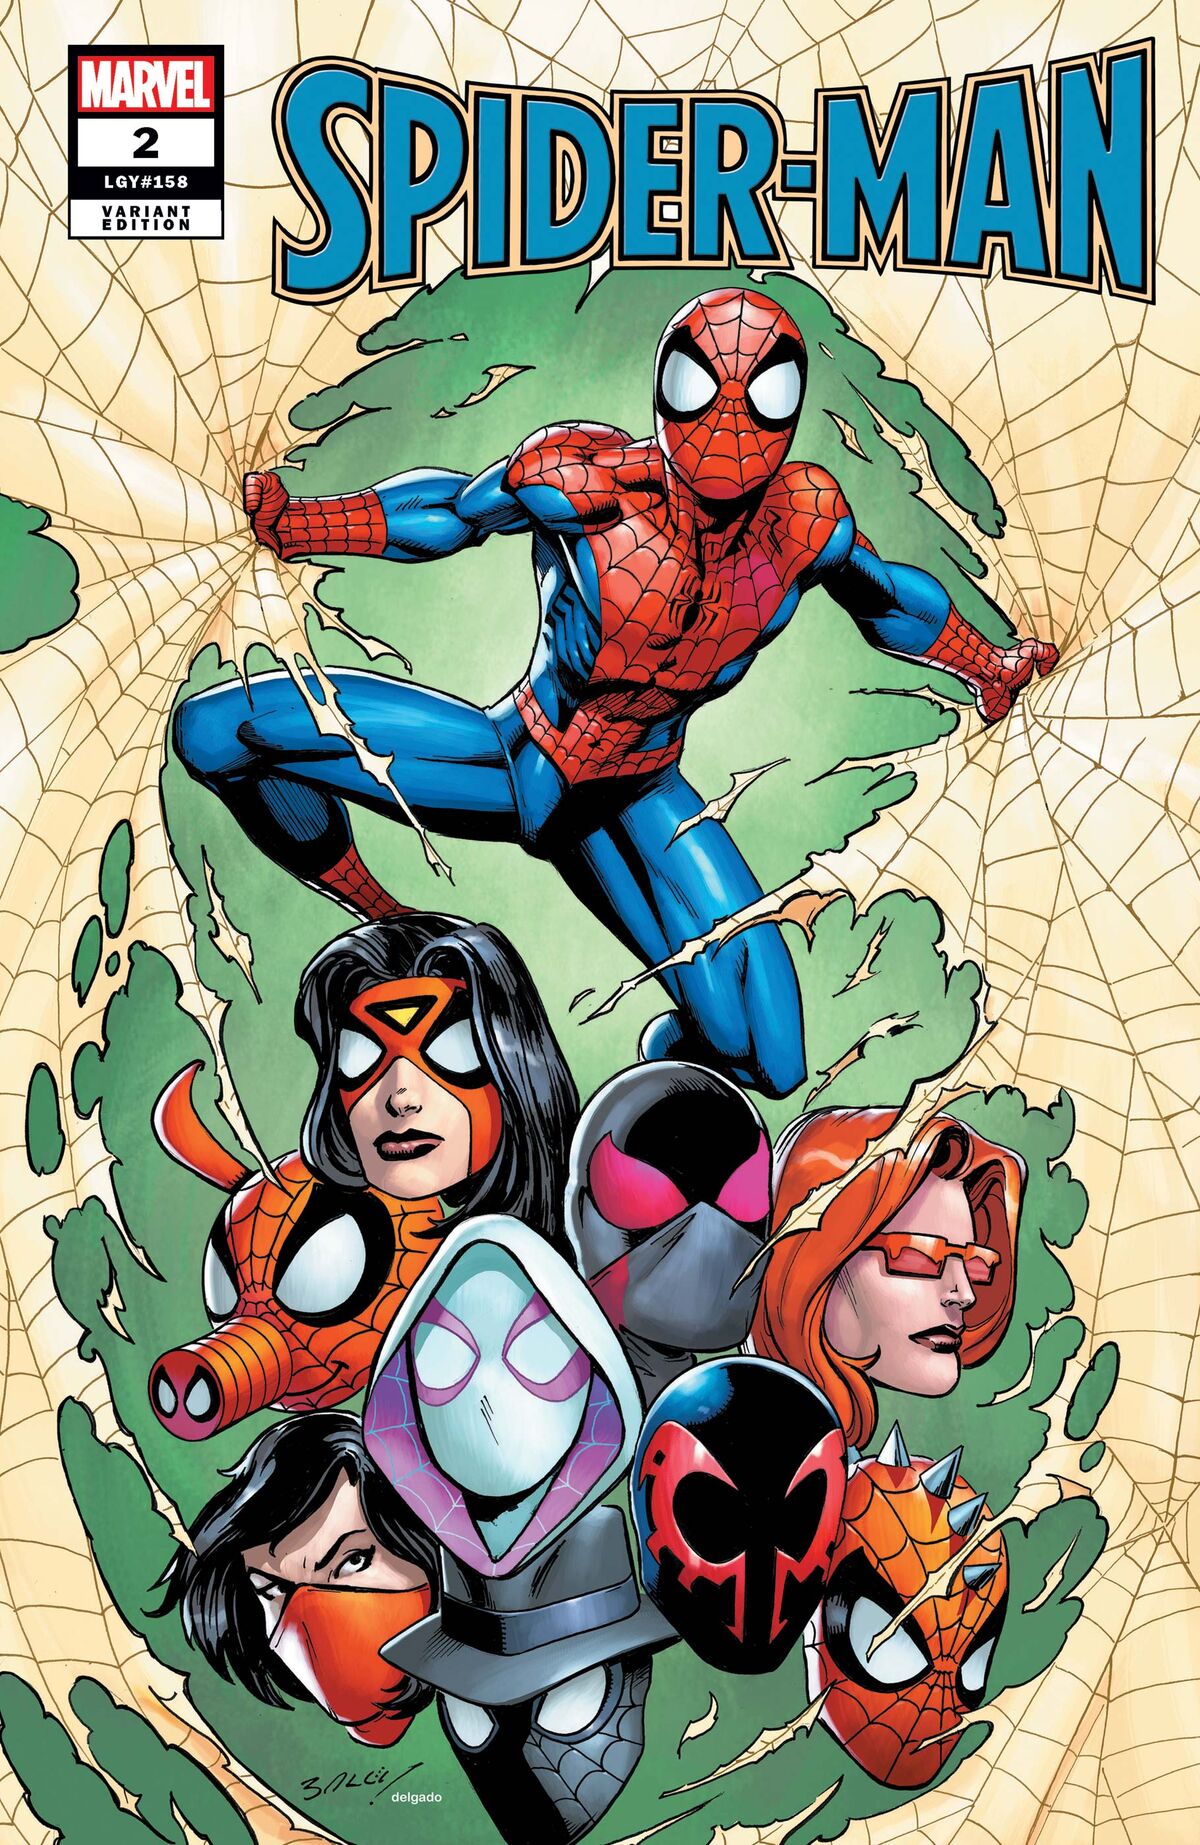 Spider-Man Vol 4 2 | Marvel Database | Fandom